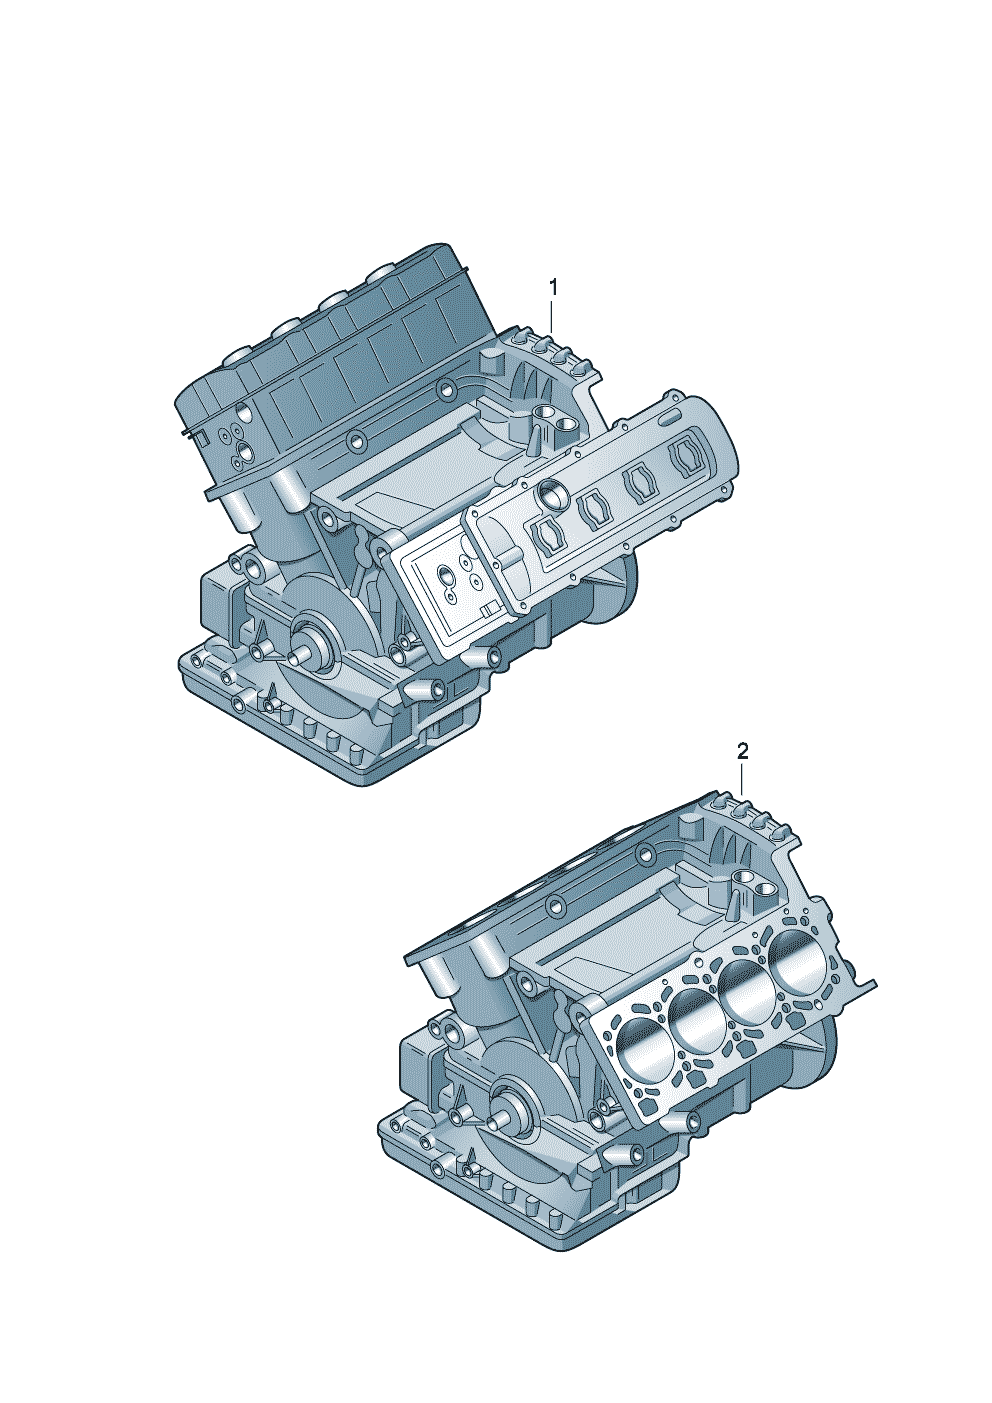 Base engine 4.2 Ltr. - Audi Q7 - aq7